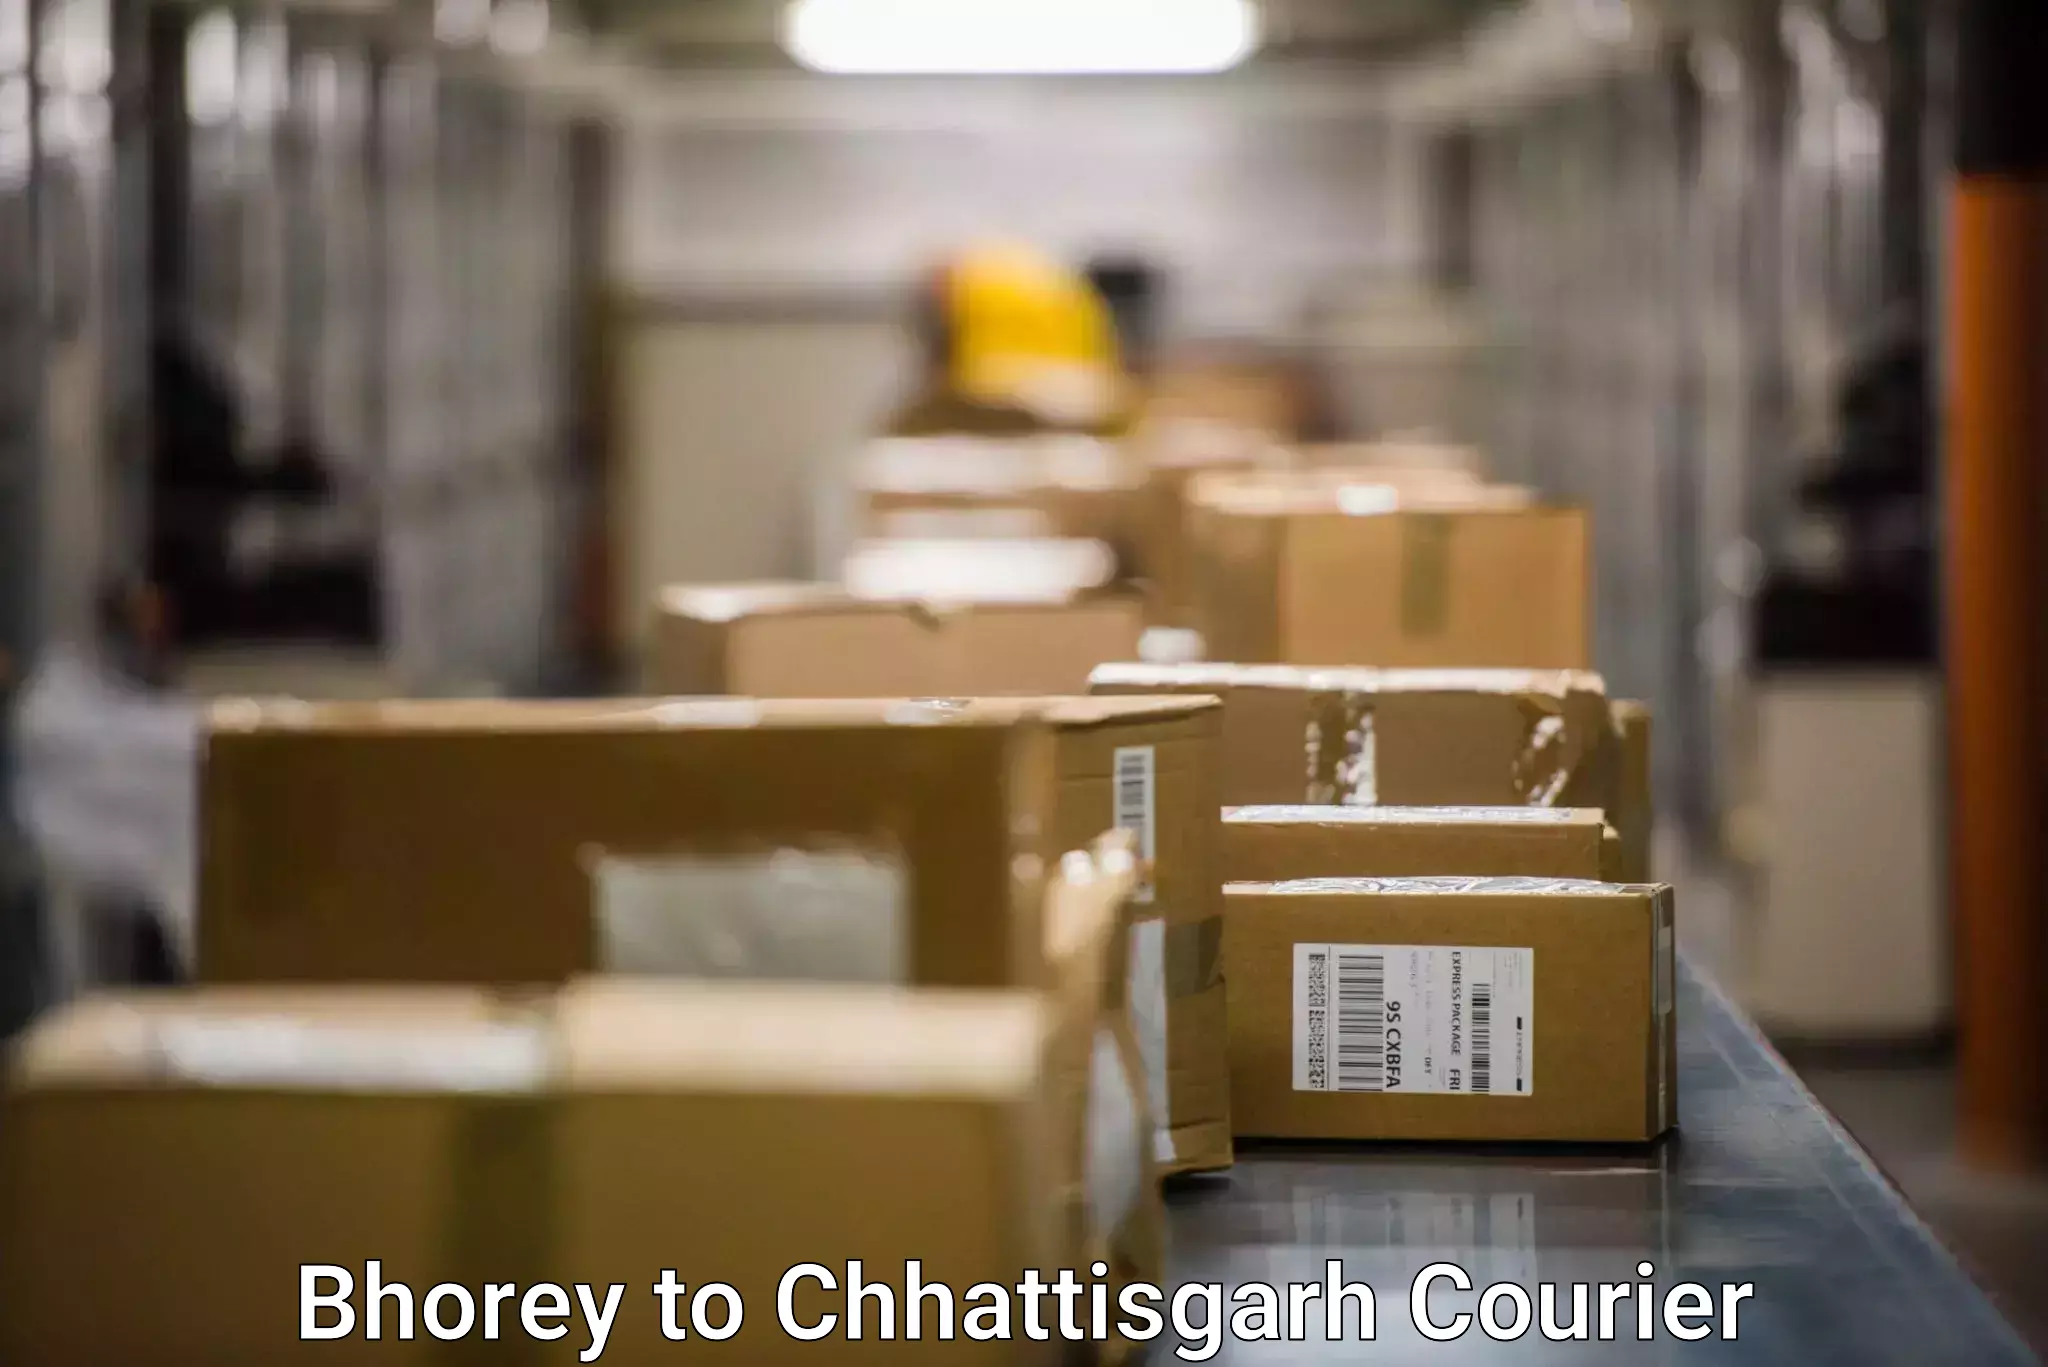 Fast delivery service Bhorey to Raigarh Chhattisgarh